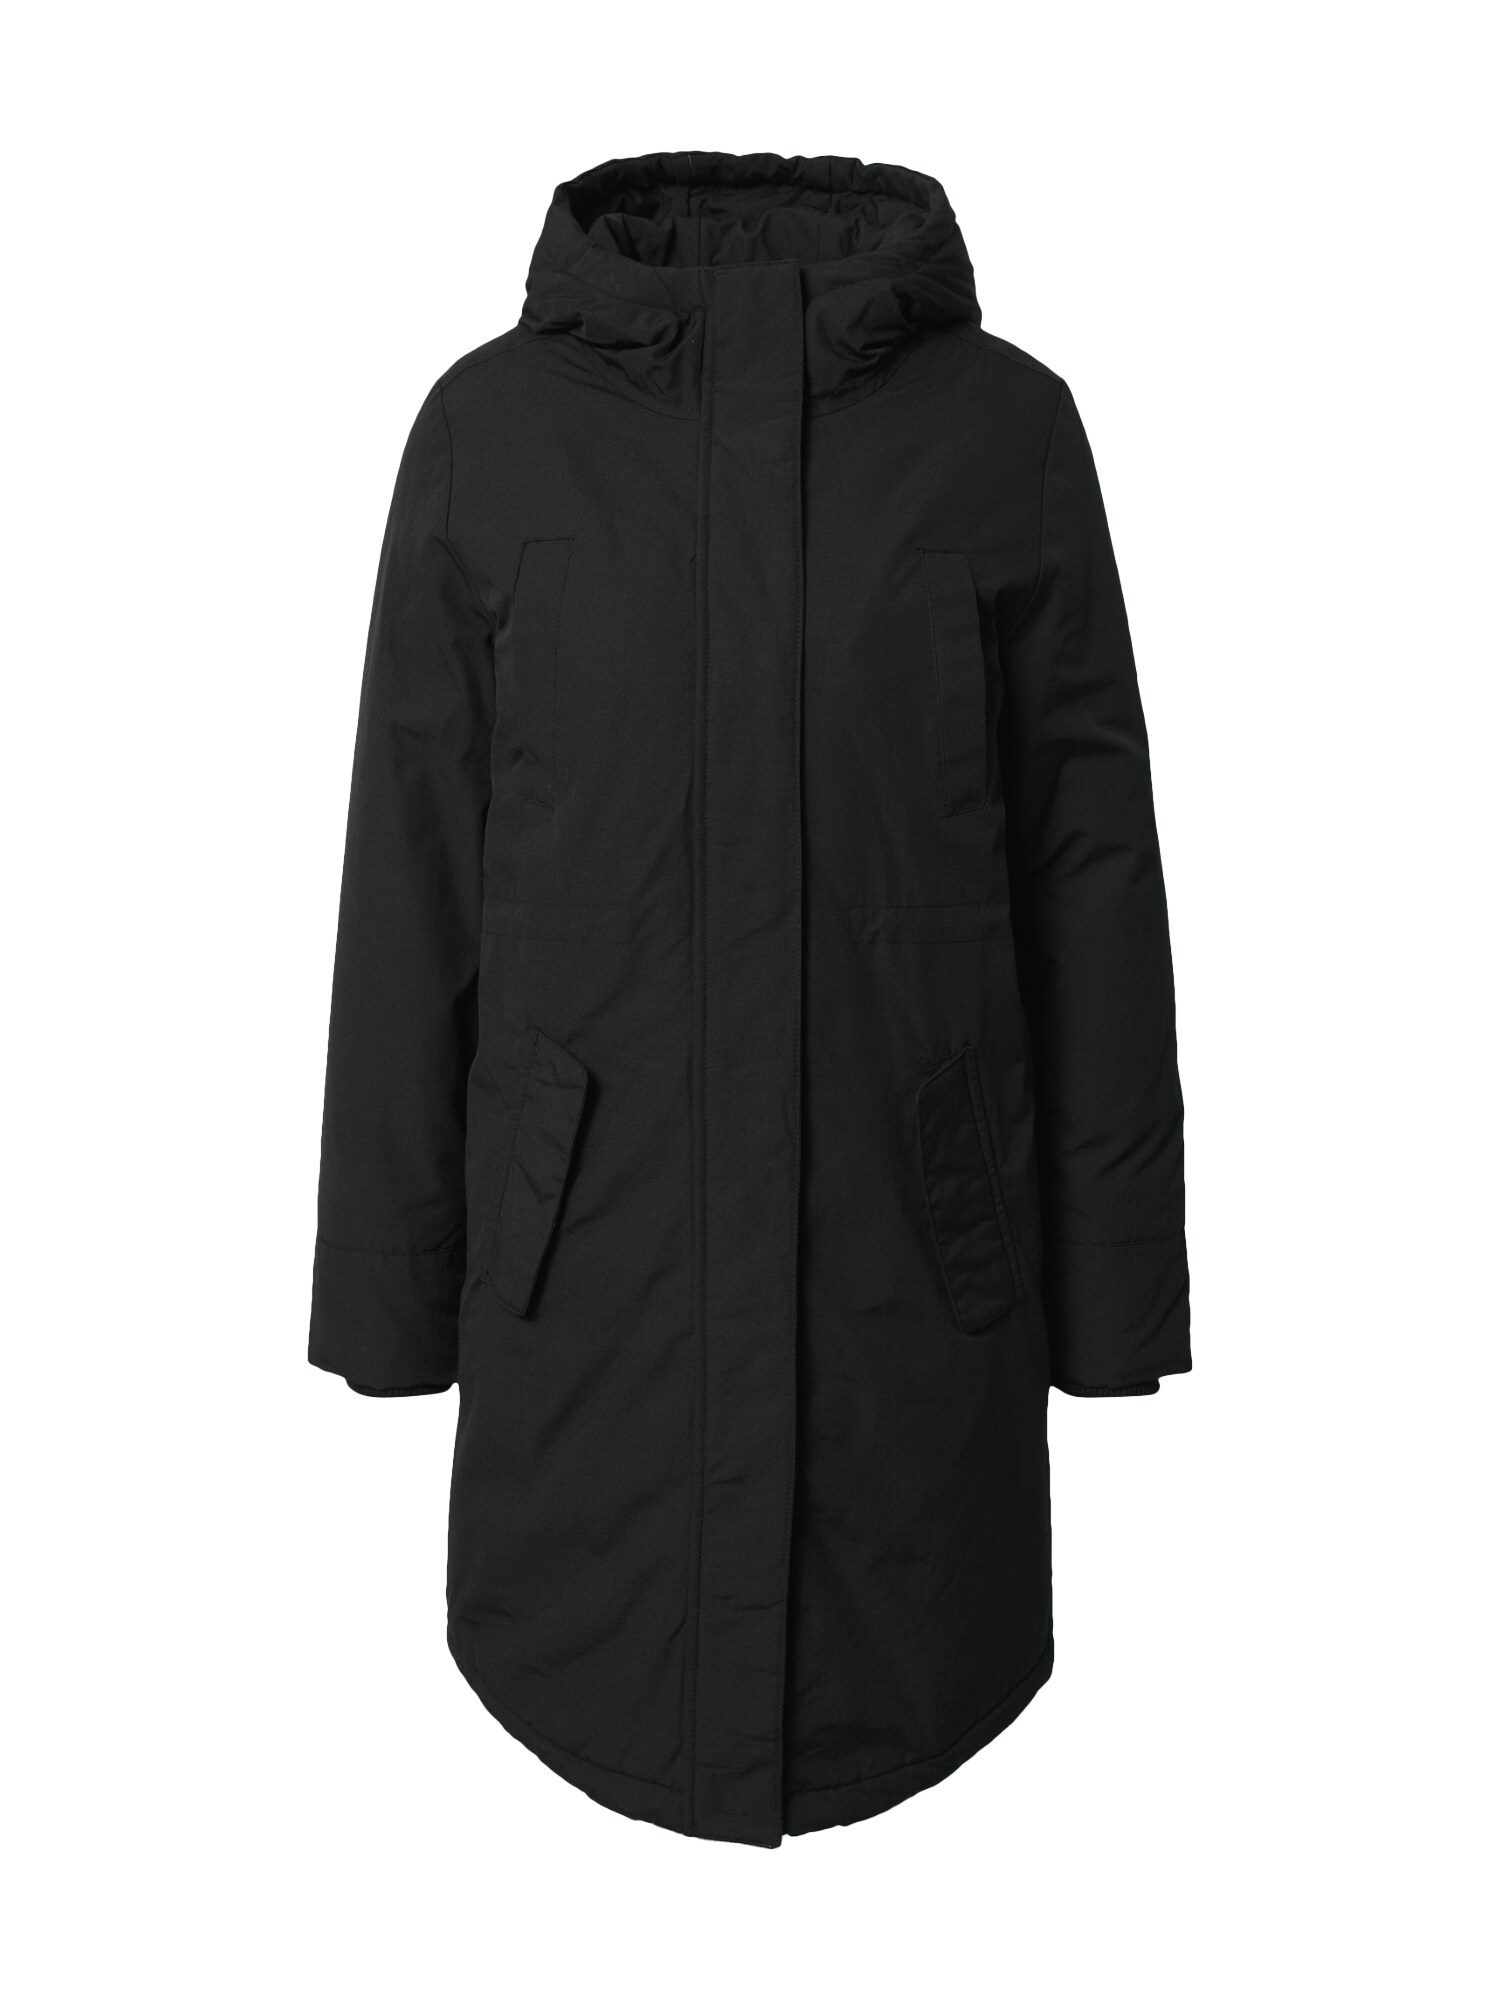 Prechodný kabát Patricia čierna modström